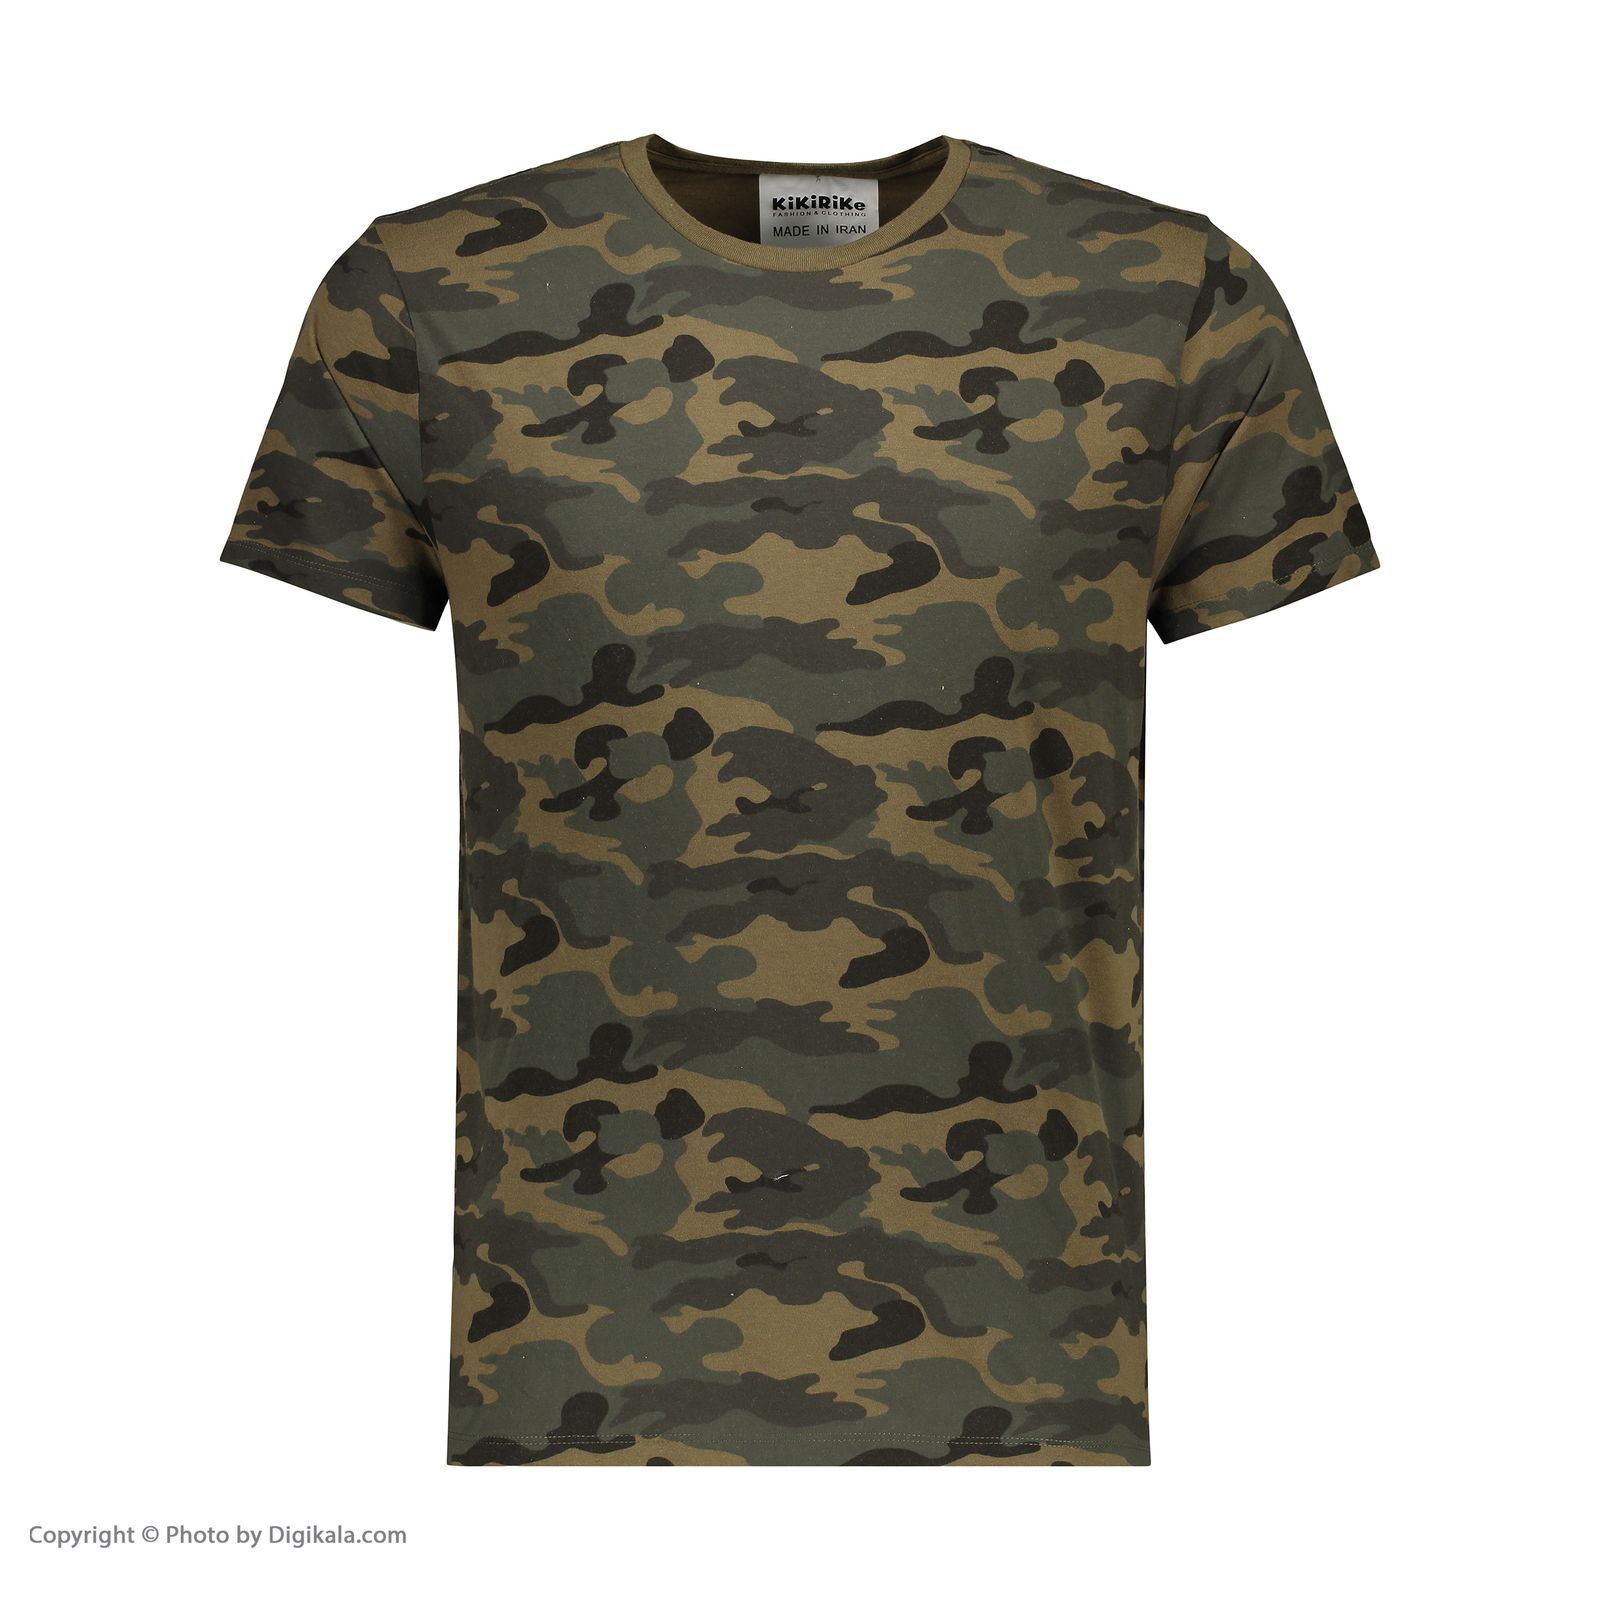 تی شرت مردانه کیکی رایکی مدل MBB20116-41 -  - 2